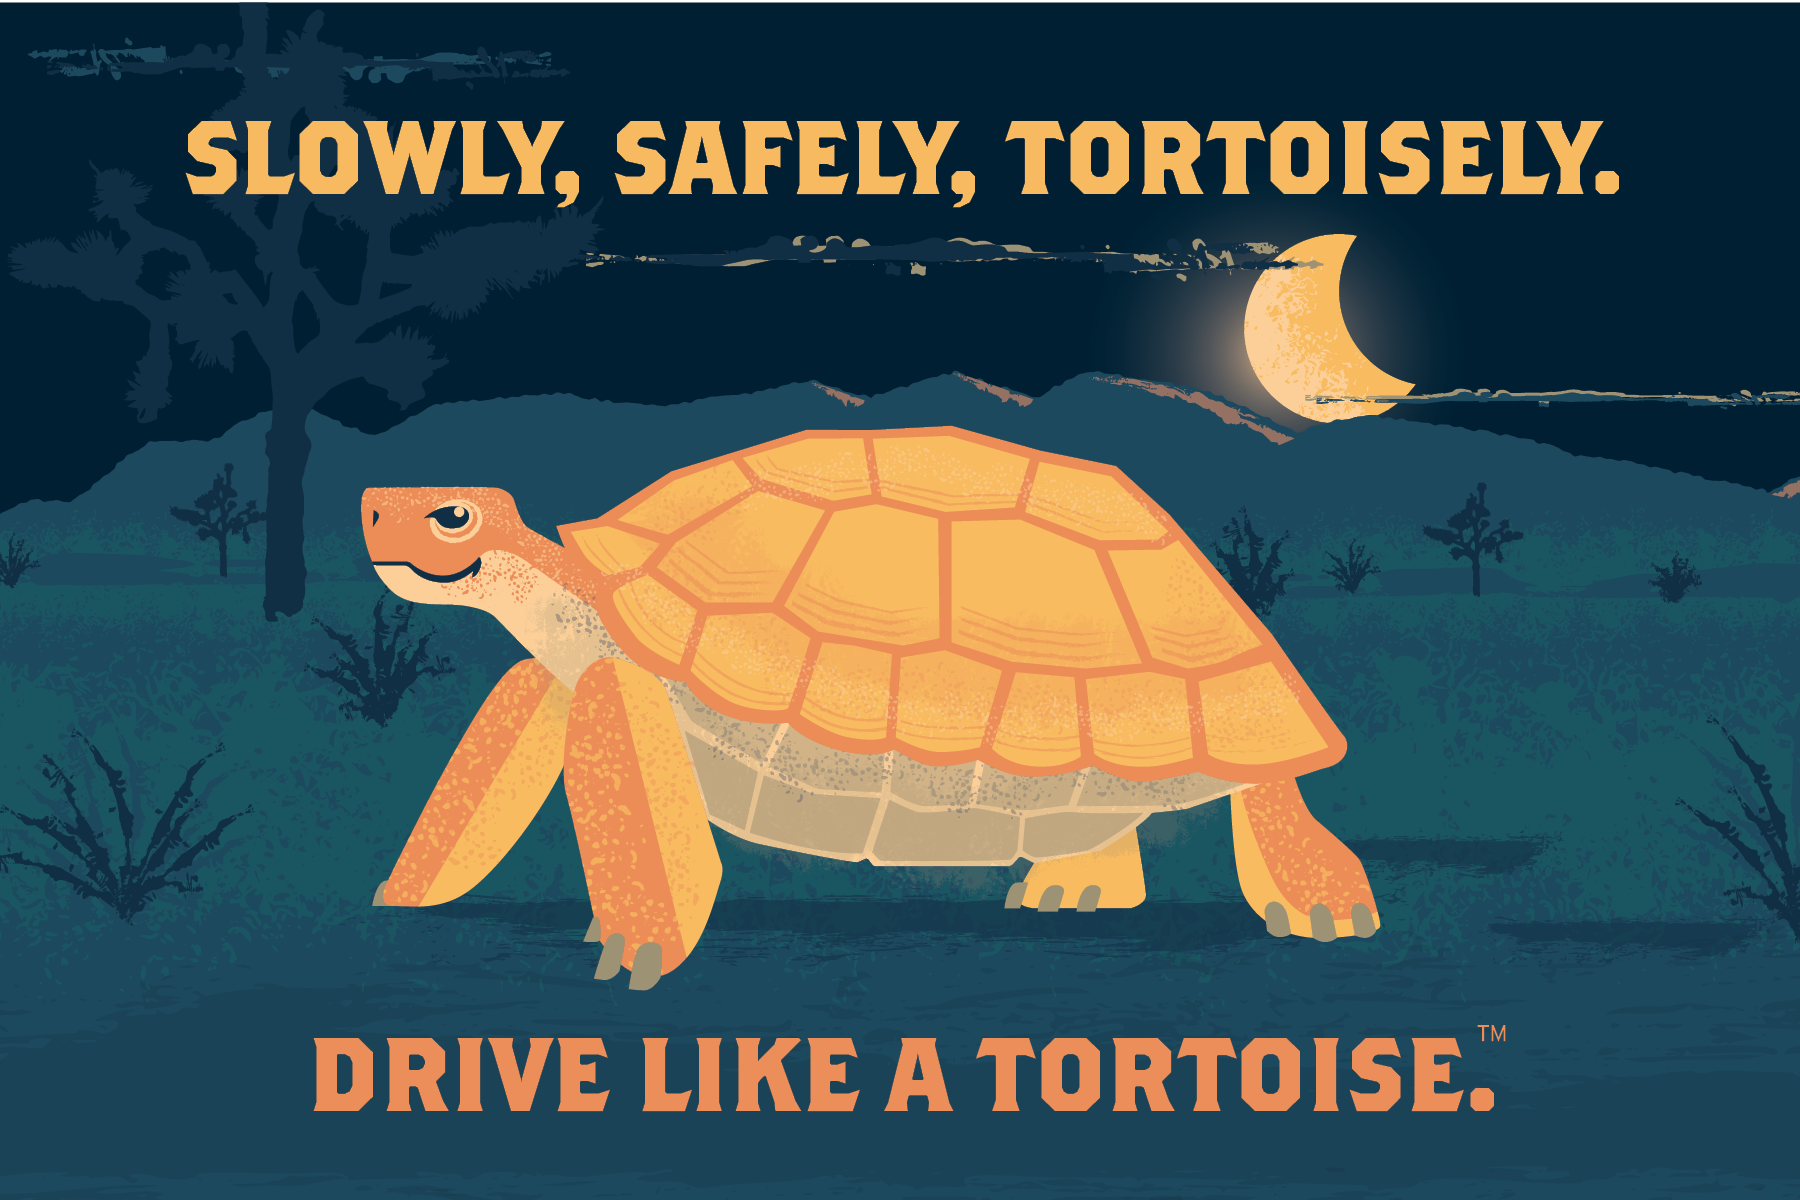 Drive Like a Tortoise Campaign